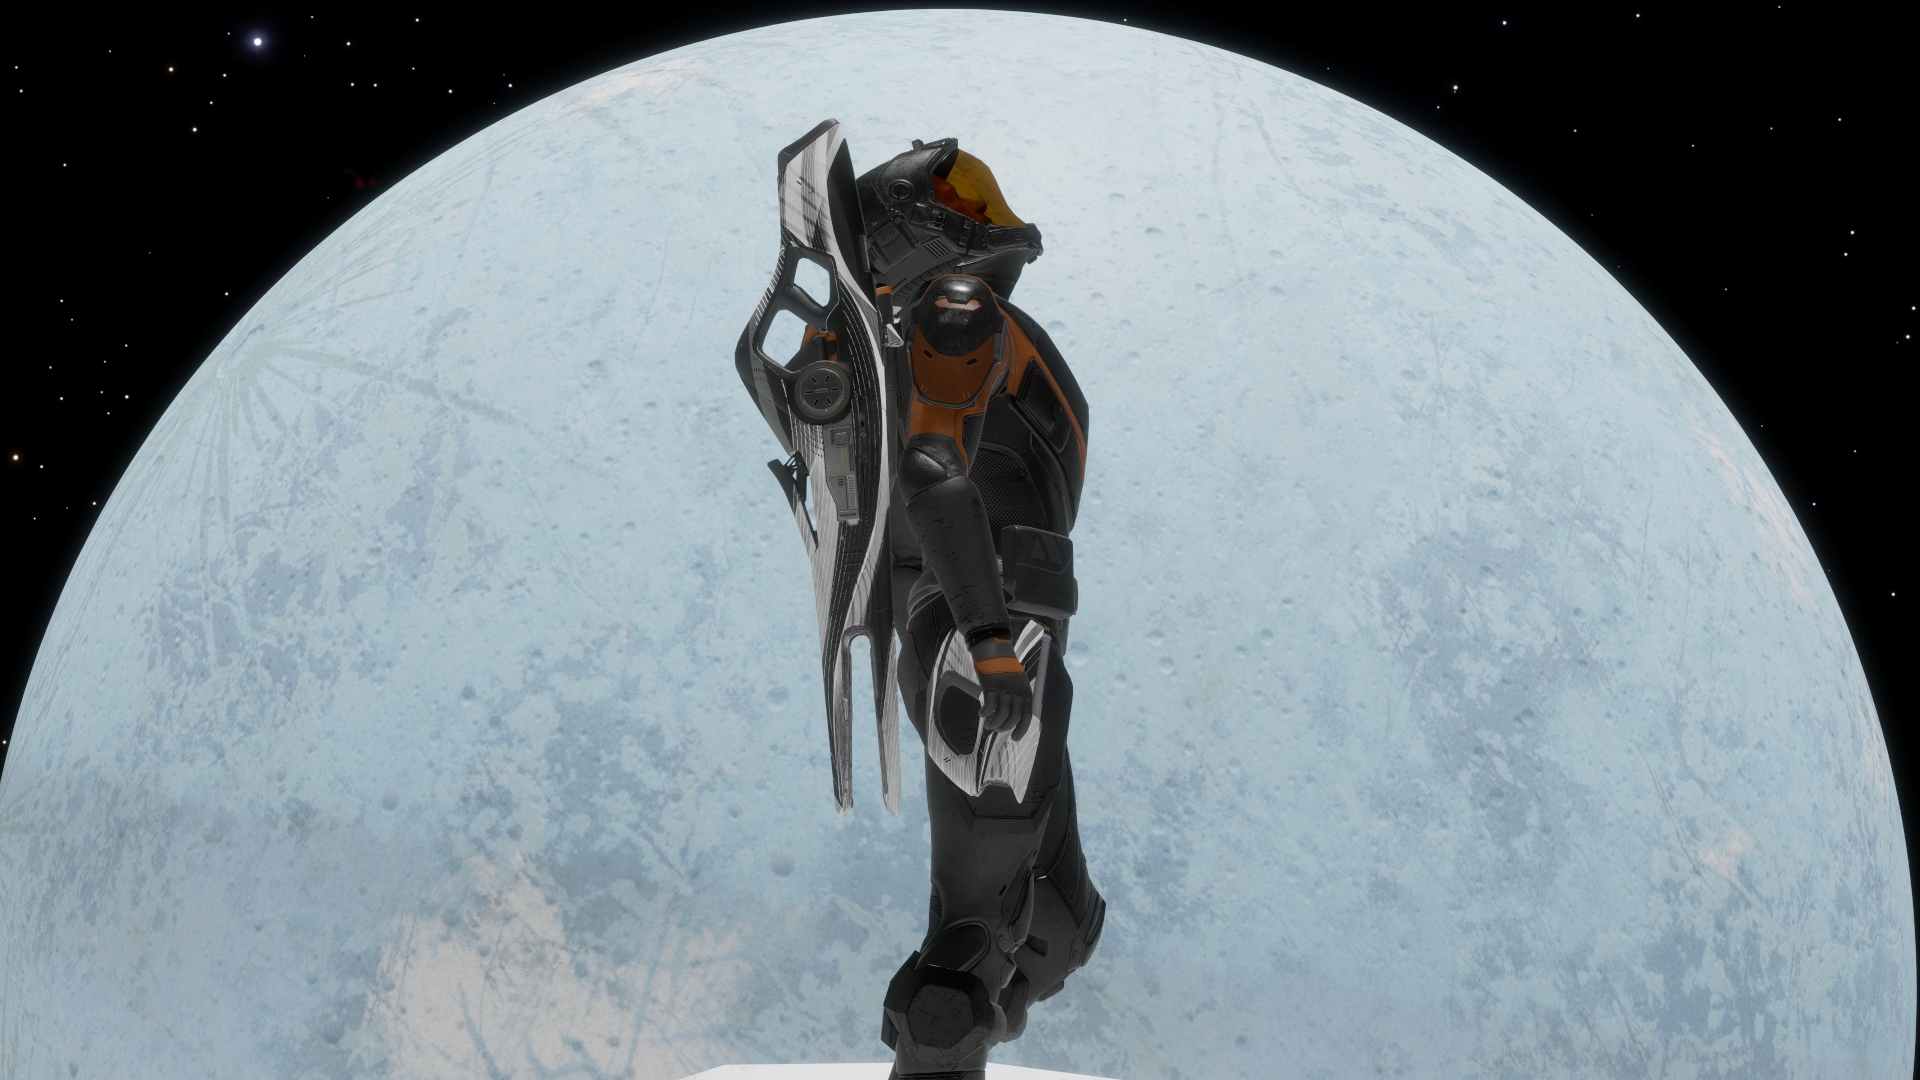 Elite Dangerous Commander searching the stars from planet Reienadi 8c